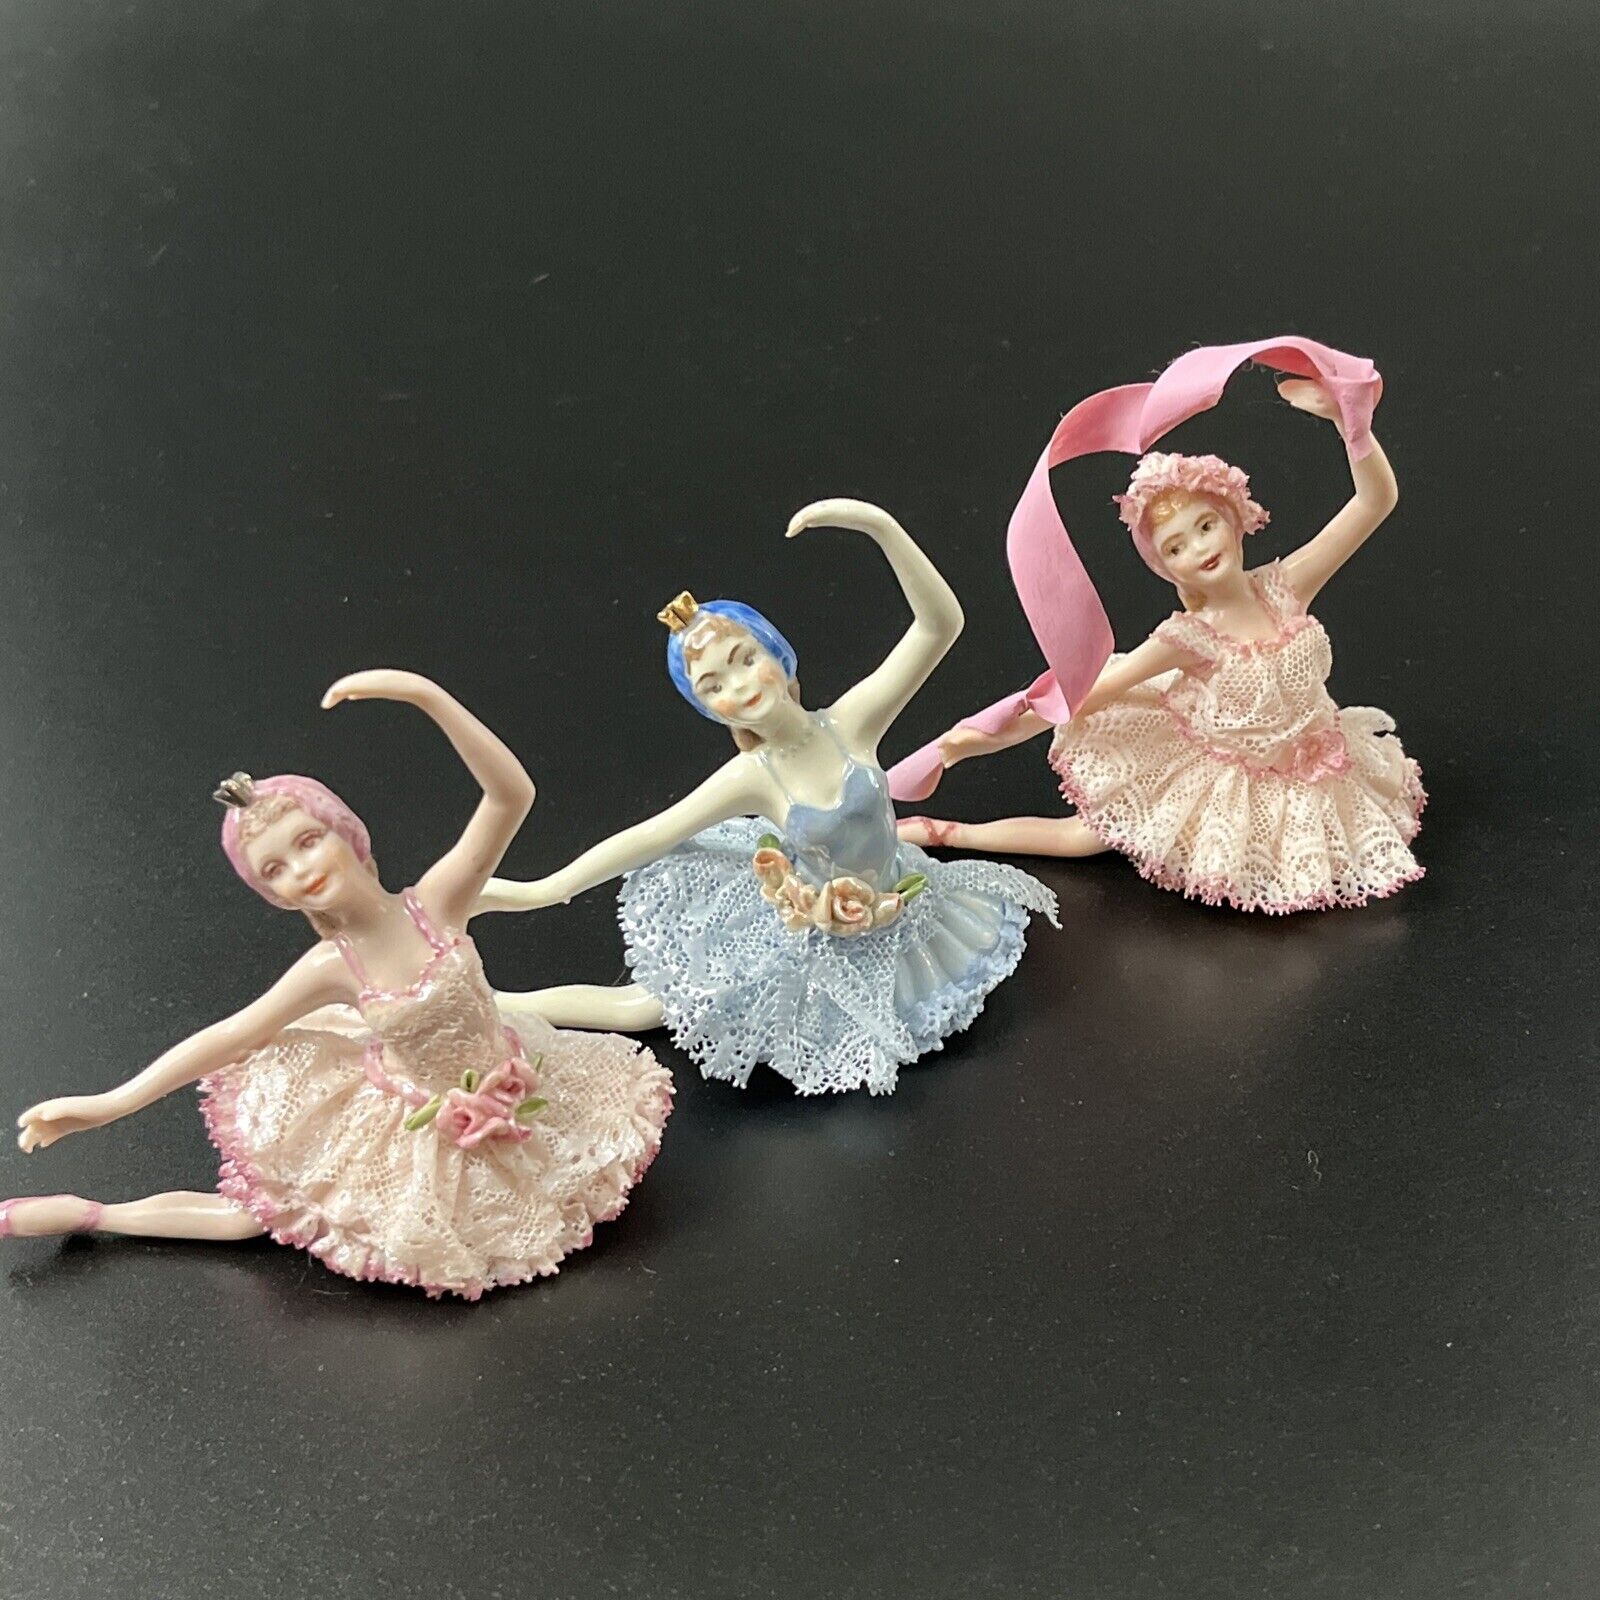 Lot of 3 Vintage Dancing Porcelain Ballerina Figurines Girl Lace Tutu Blue Pink